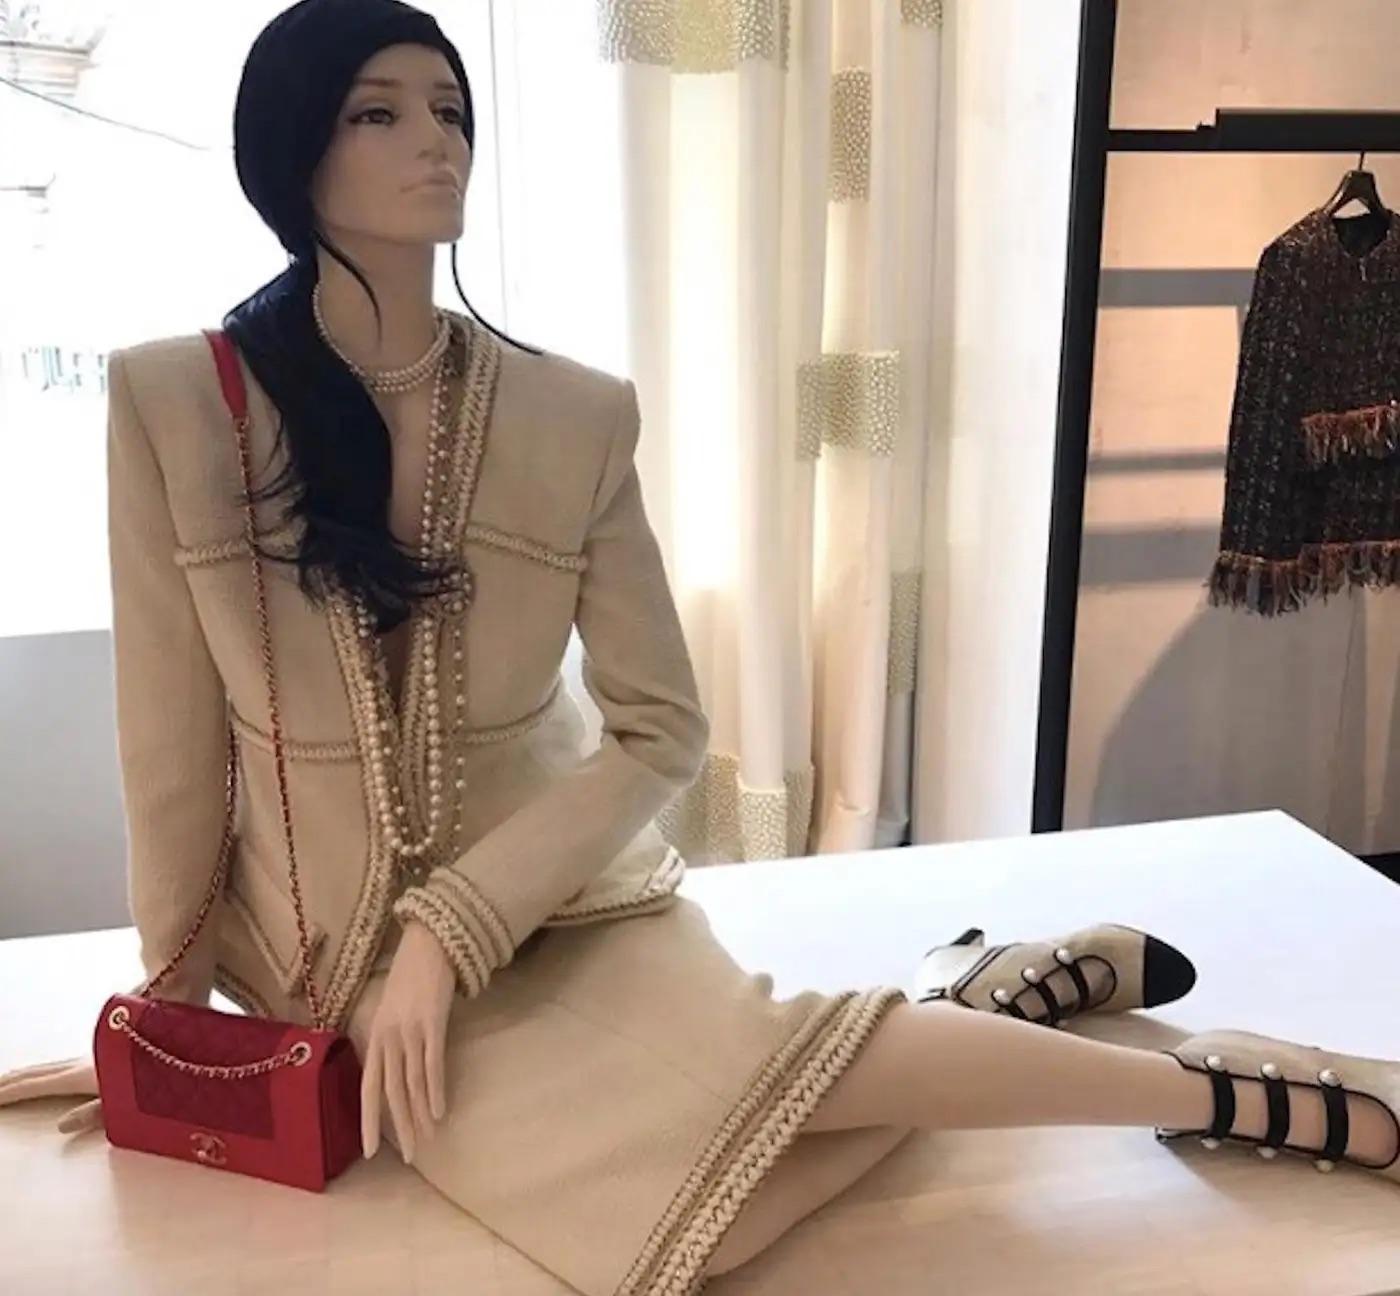 Tailleur jupe et veste crème écrue Metiers D'Art Ritz 17A Chanel, pré-automne 2017 en vente 16